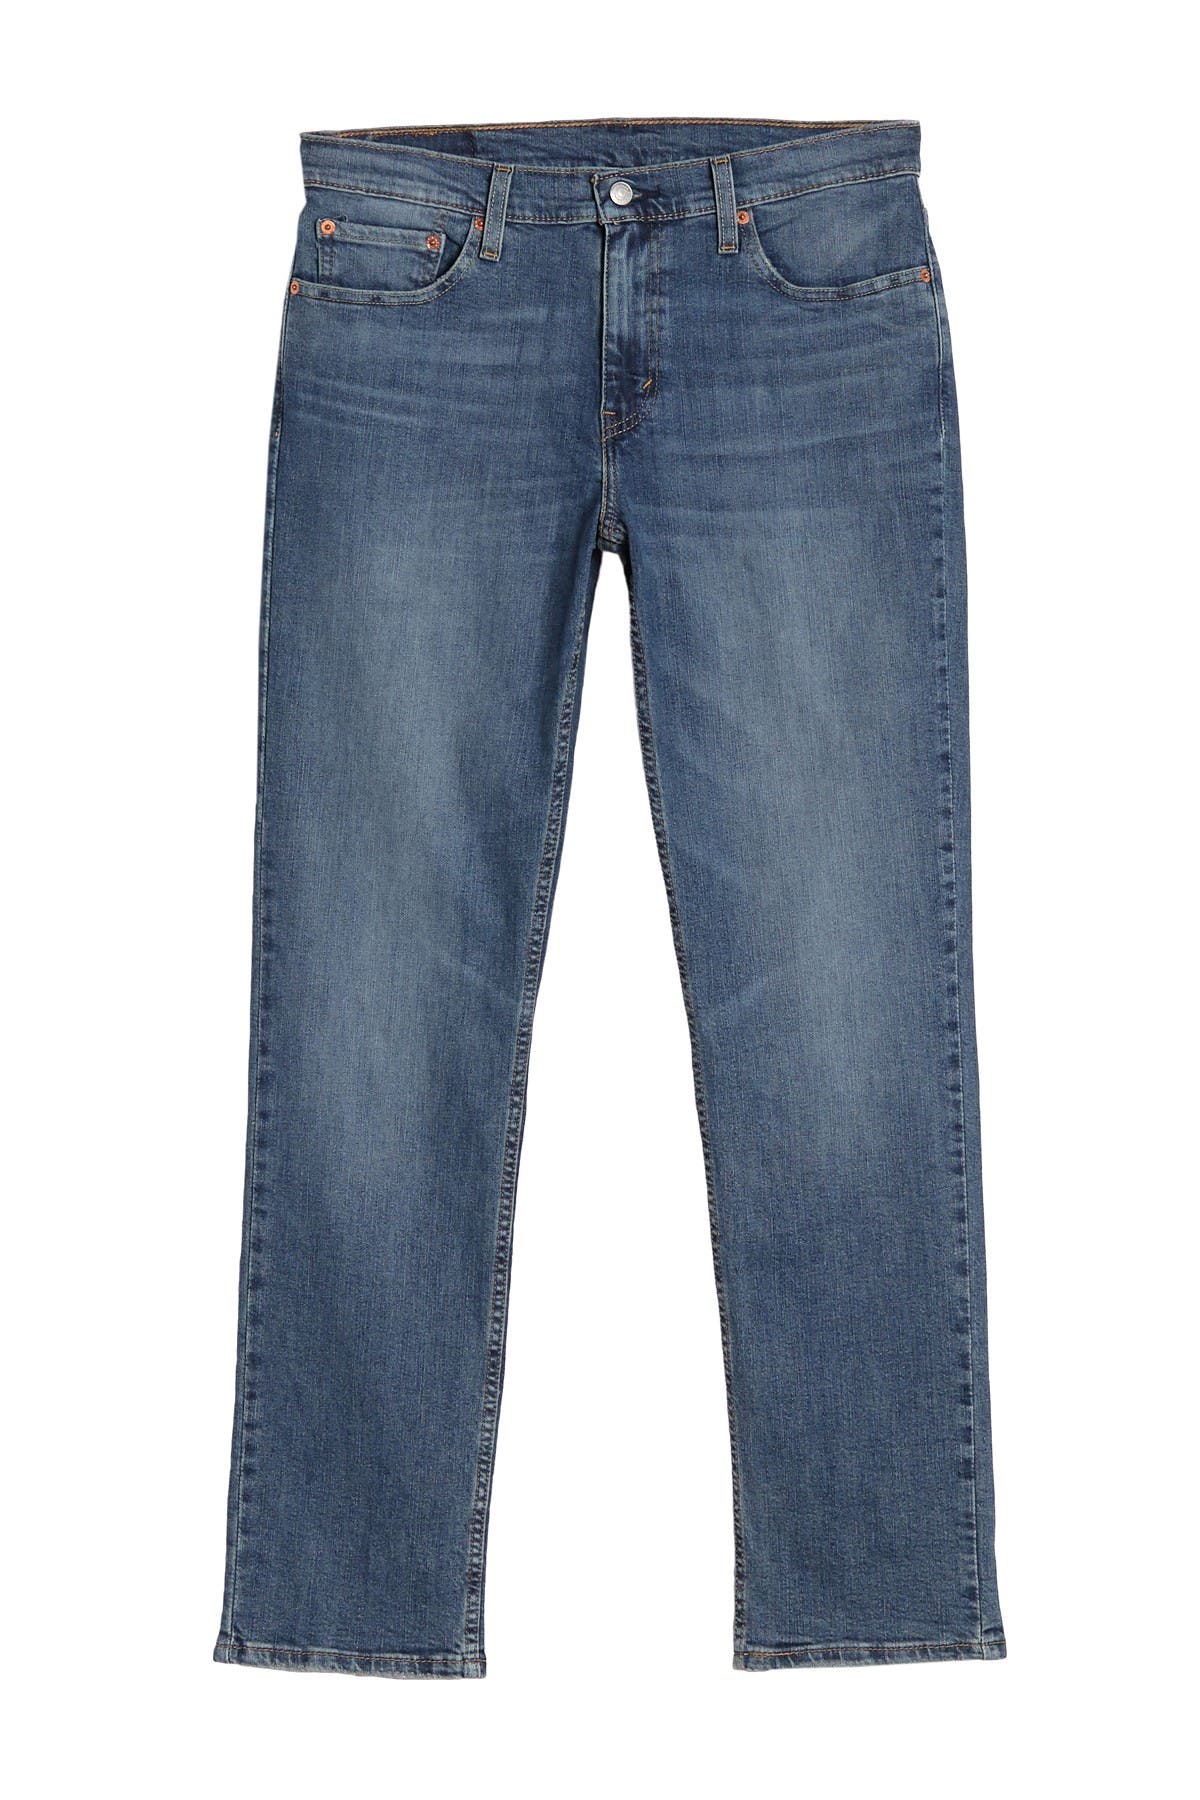 levis jeans 30x30